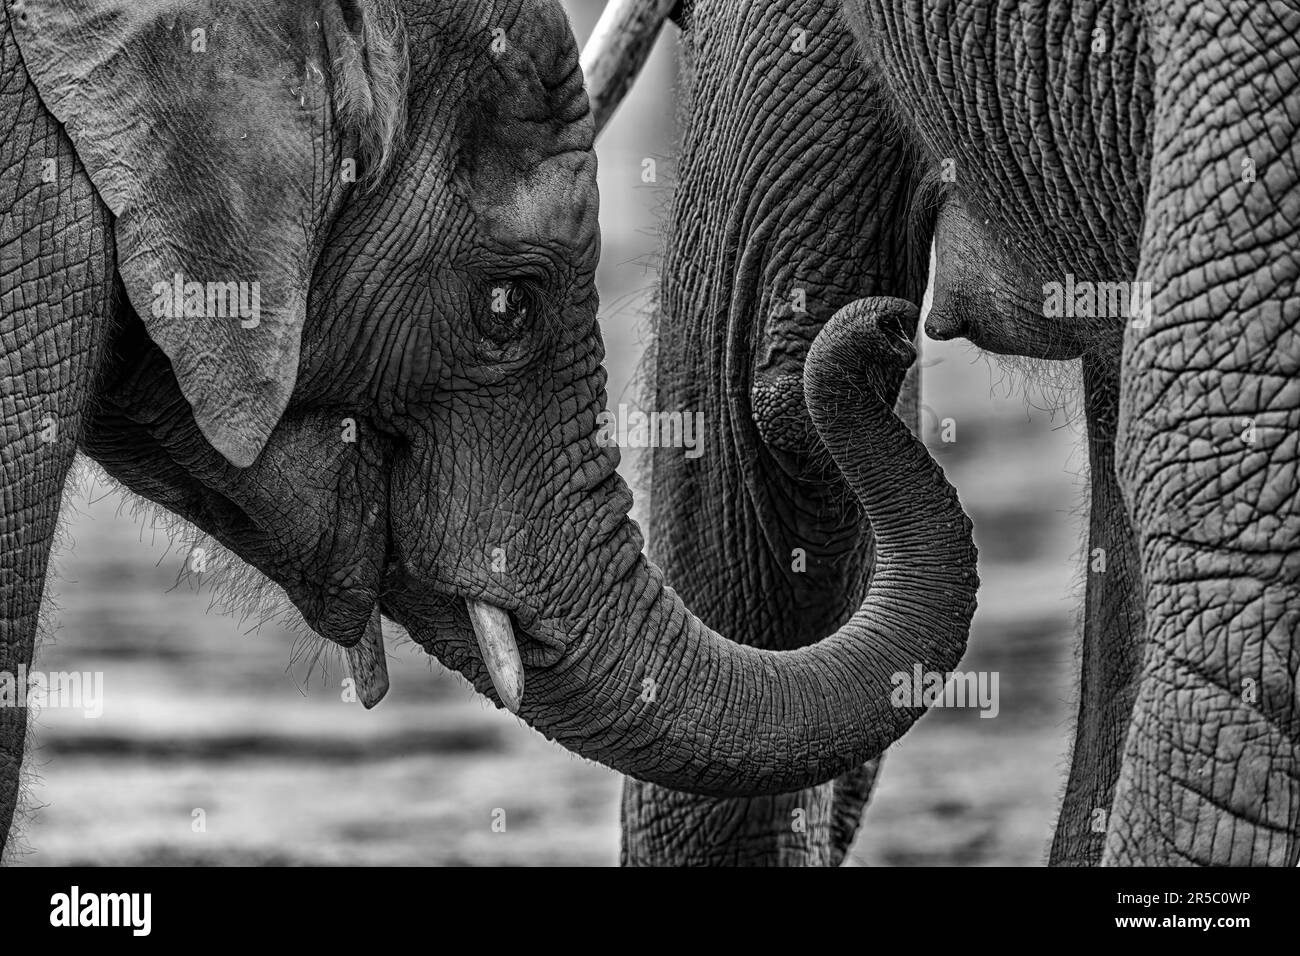 Zwei afrikanische Elefanten stehen Seite an Seite und berühren Stämme in einem Zeichen der Zuneigung Stockfoto